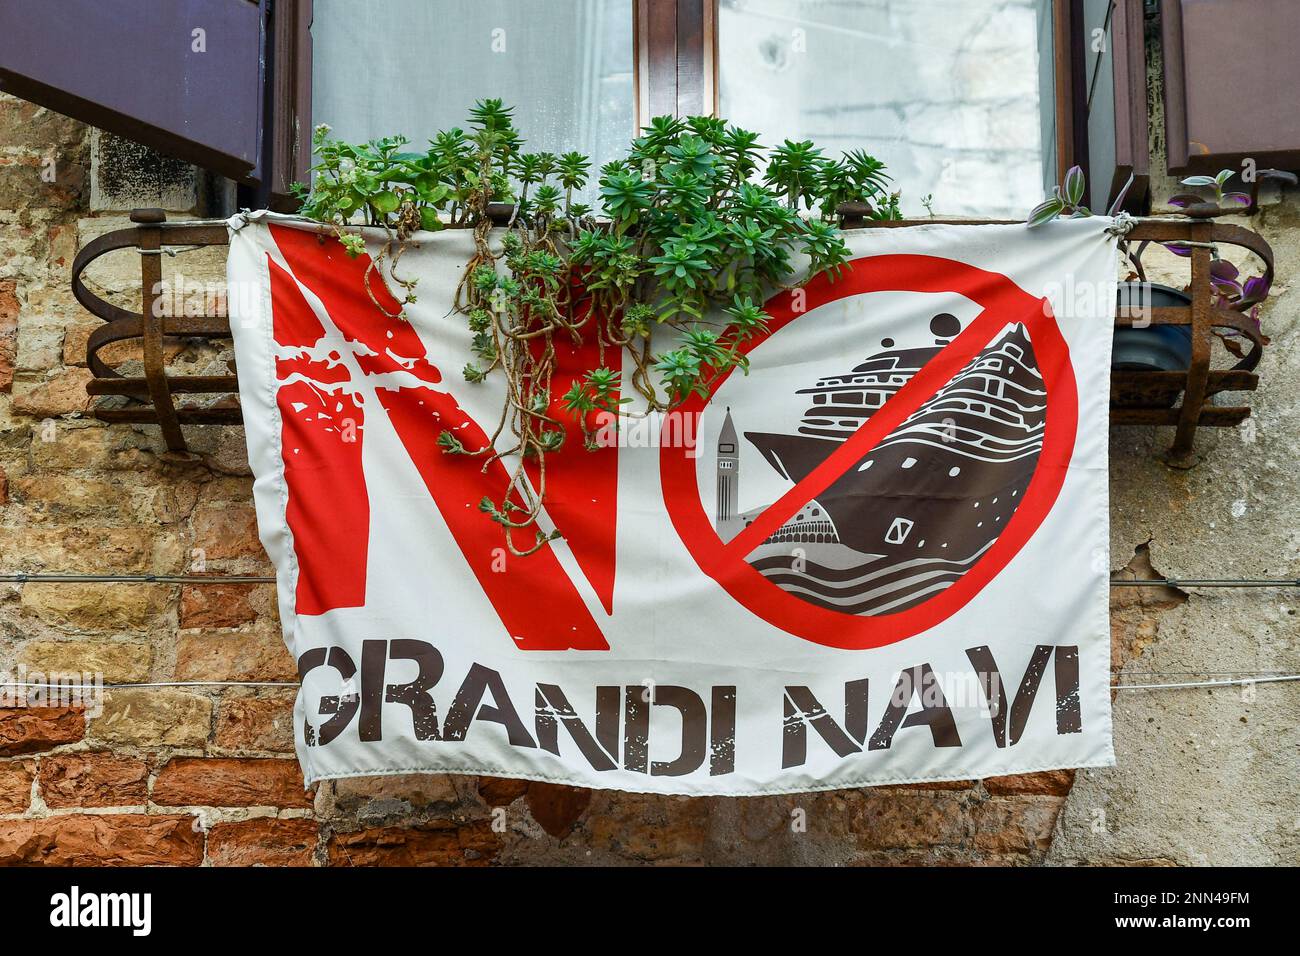 Bandiera di protesta che dice 'No Big Ships' contro l'accesso delle navi da crociera nella laguna di Venezia fuori da una finestra nel centro storico di Venezia, Italia Foto Stock